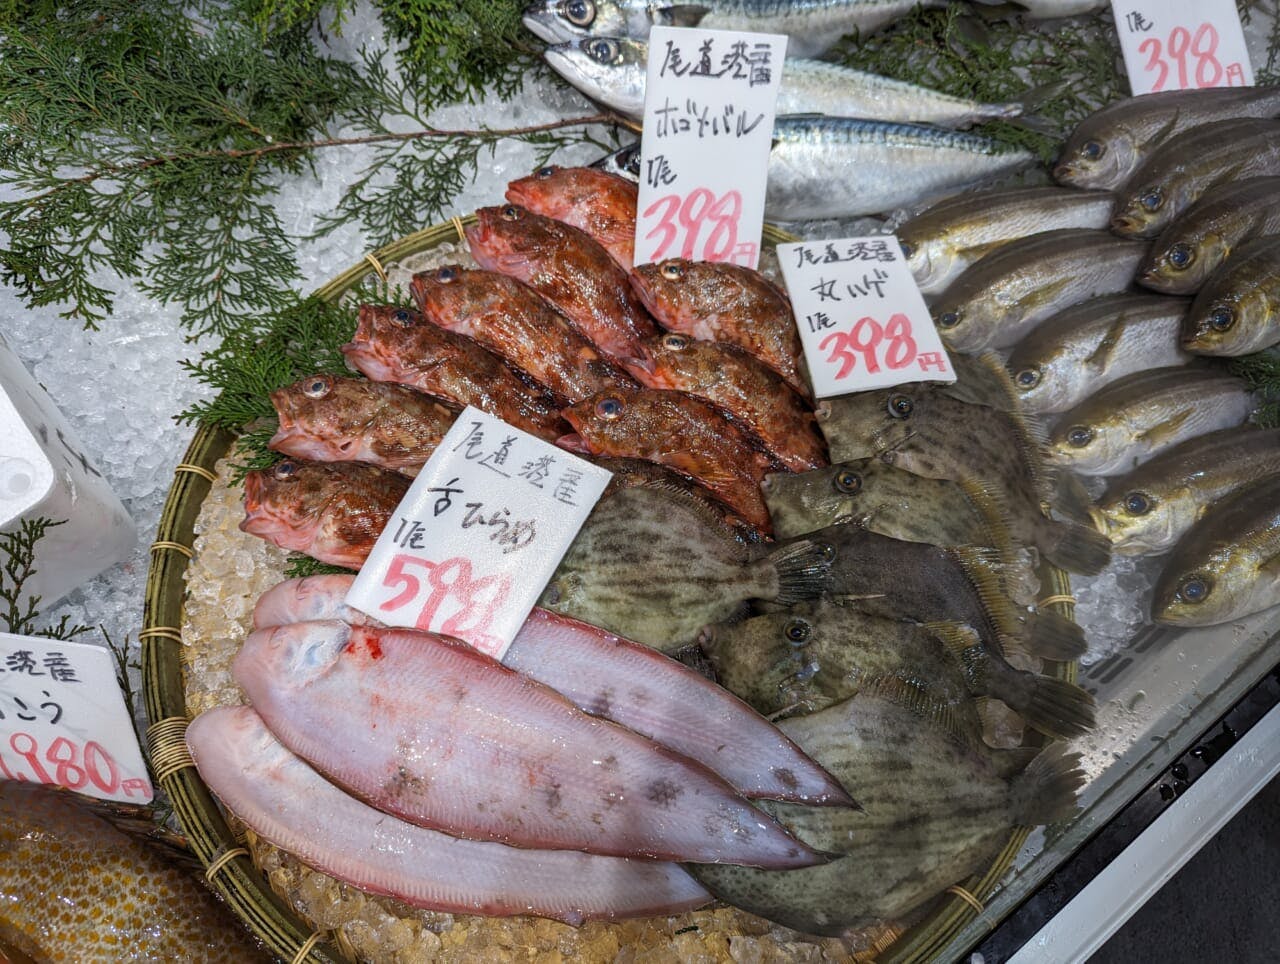 鮮魚売場では火曜日と金曜日は尾道直送の地魚が並ぶ